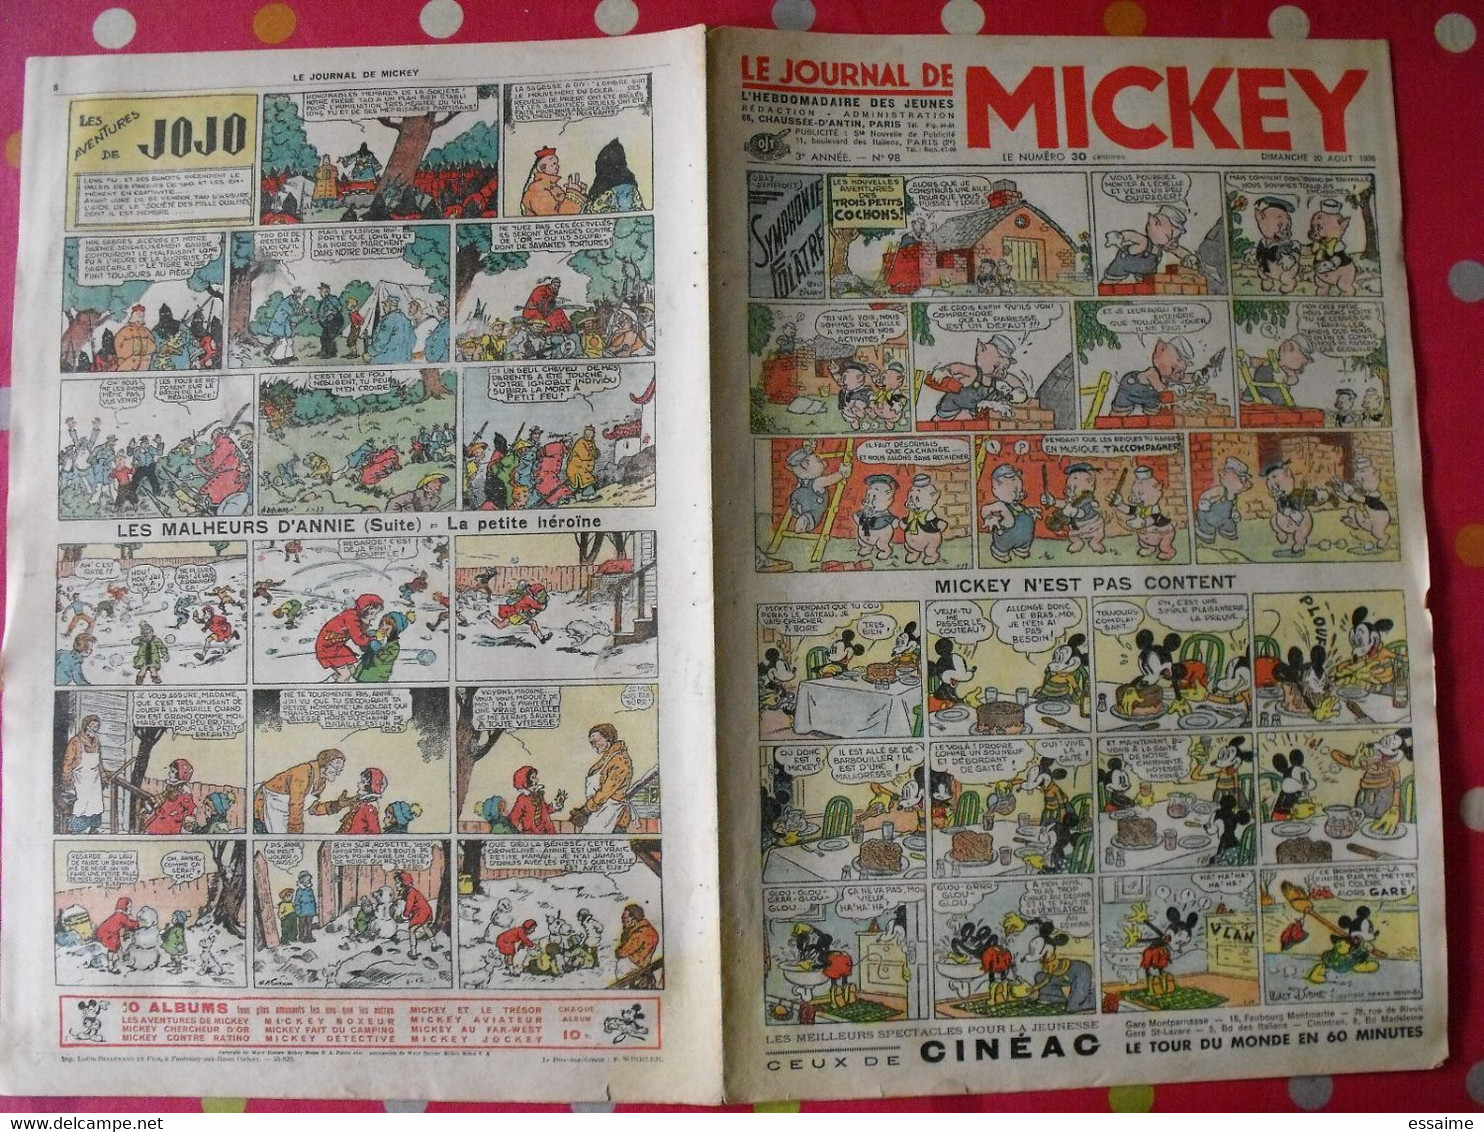 5 n° du journal de Mickey 1936-1937